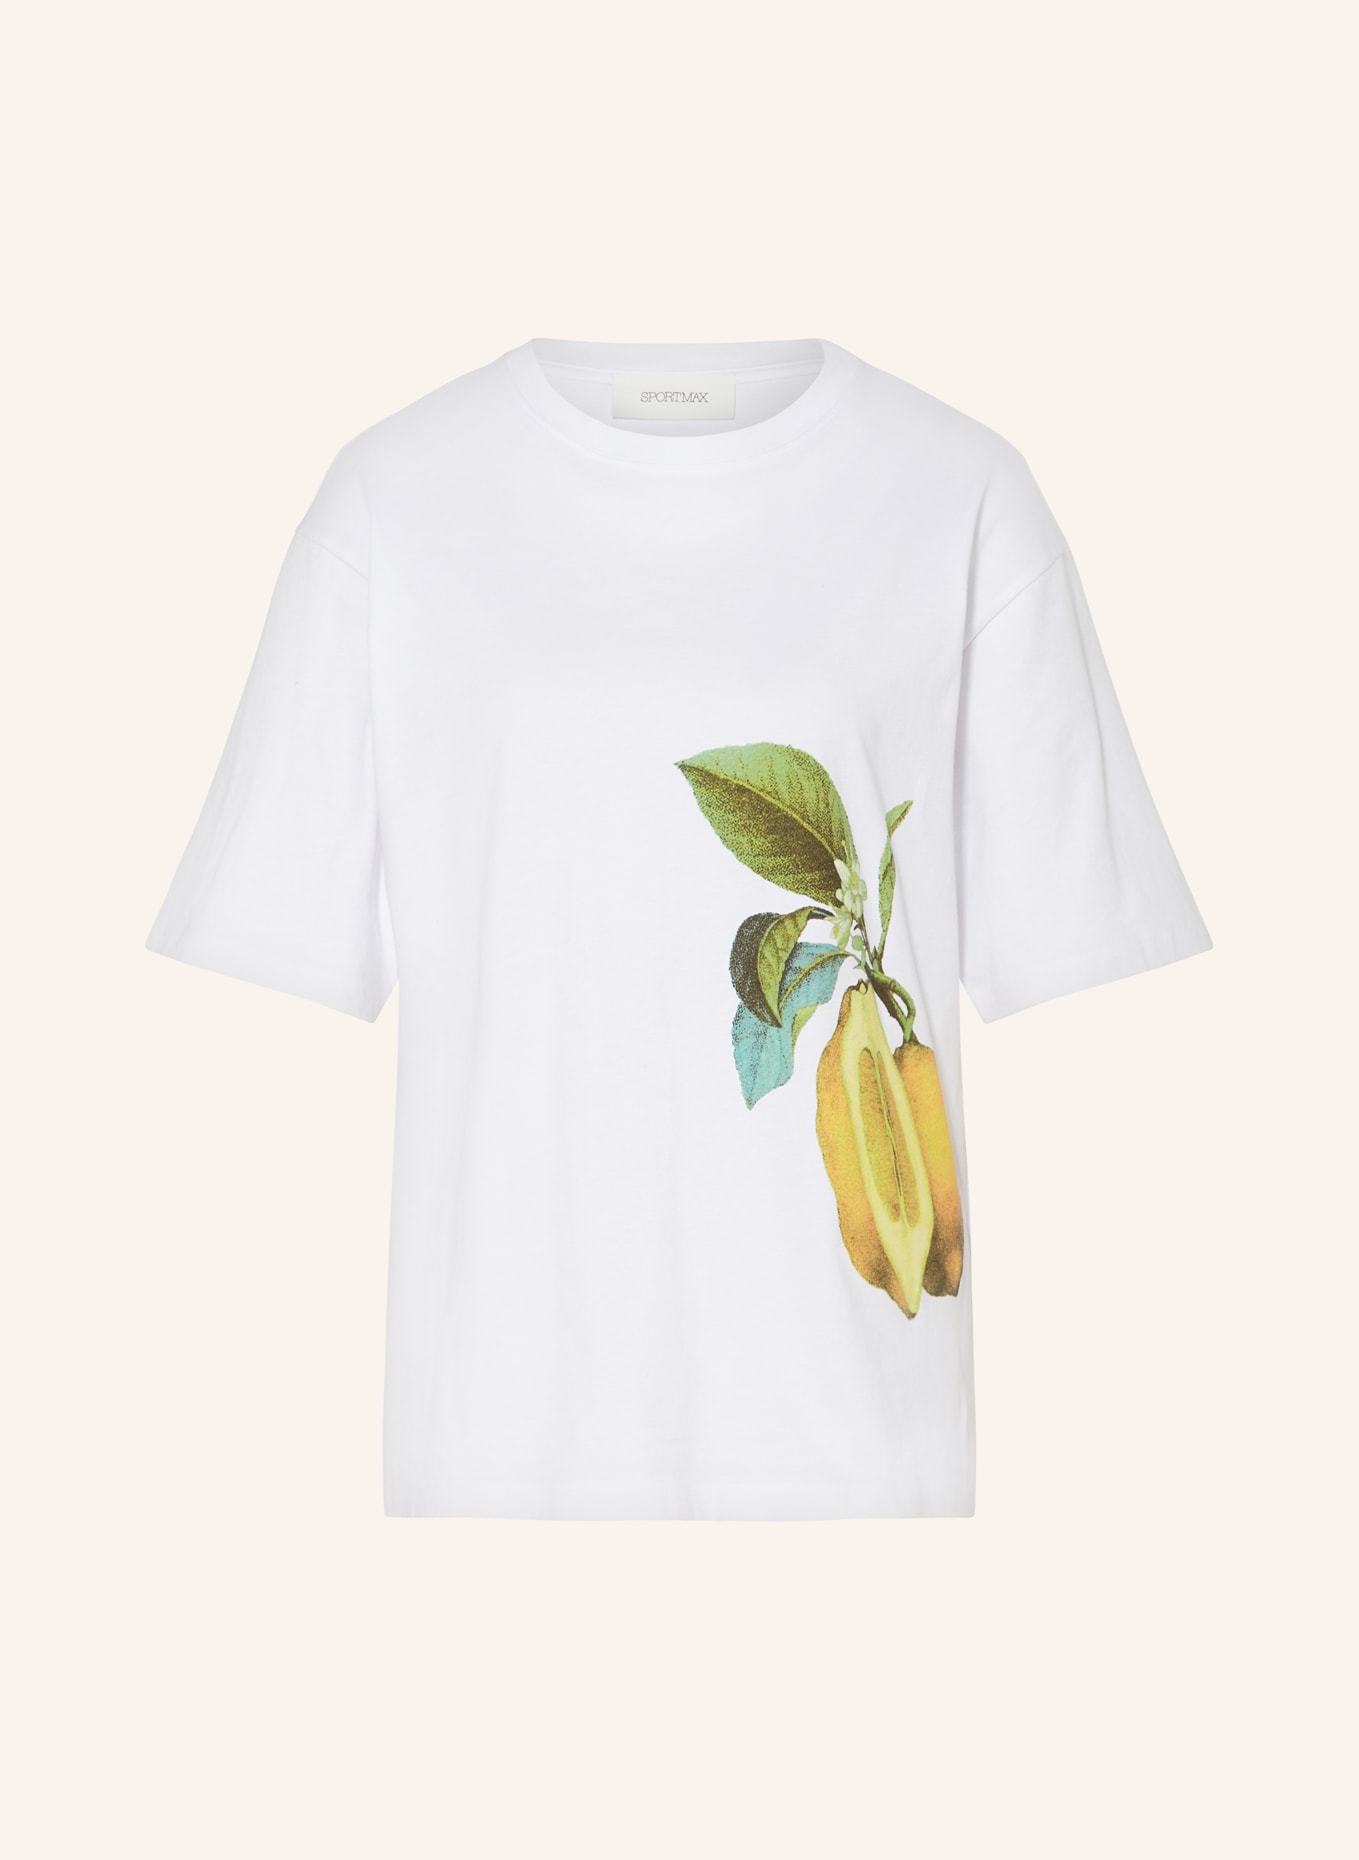 SPORTMAX T-shirt NEBBIE, Color: WHITE (Image 1)